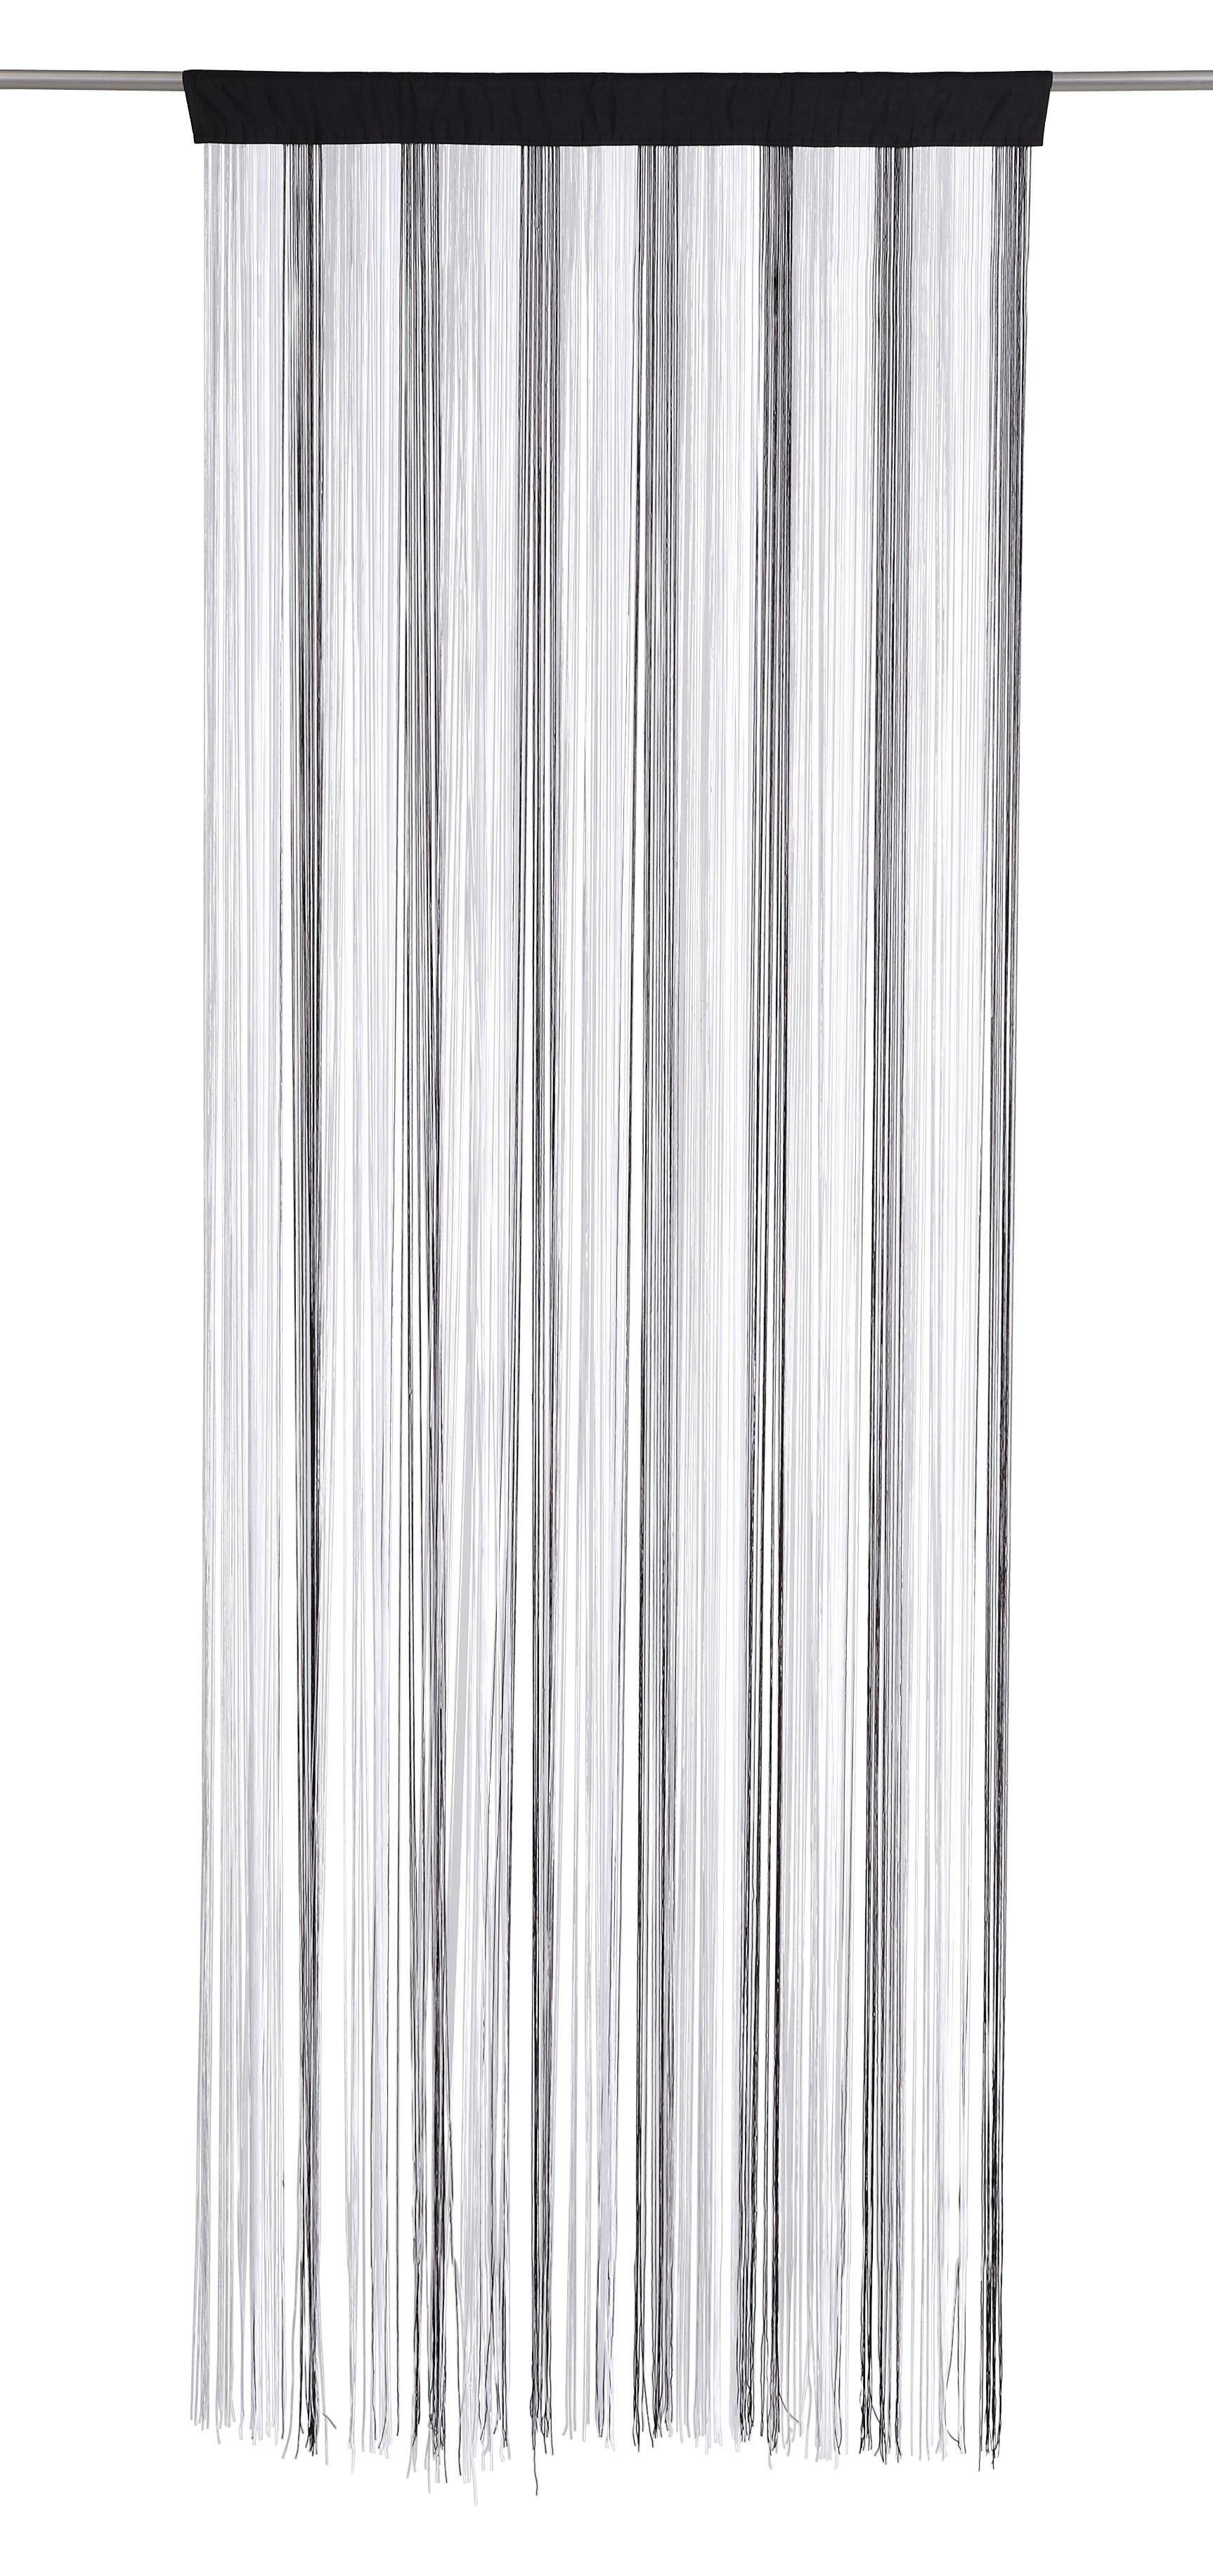 FADENVORHANG transparent  - Silberfarben/weiss, Basics, Textil (90/245cm) - Boxxx